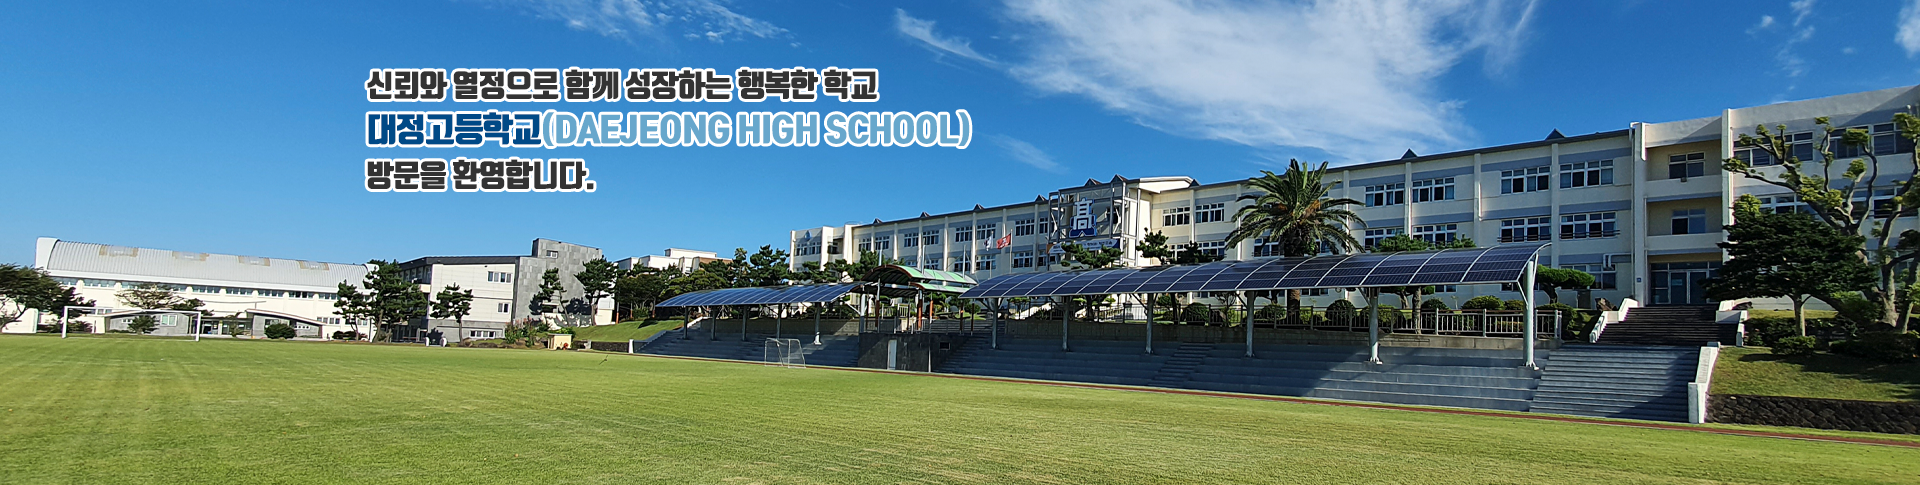 신뢰와 열정으로 함께 성장하는 행복한 학교 대정고등학교(DAEJEONG HIGH SCHOOL) 방문을 환영합니다.